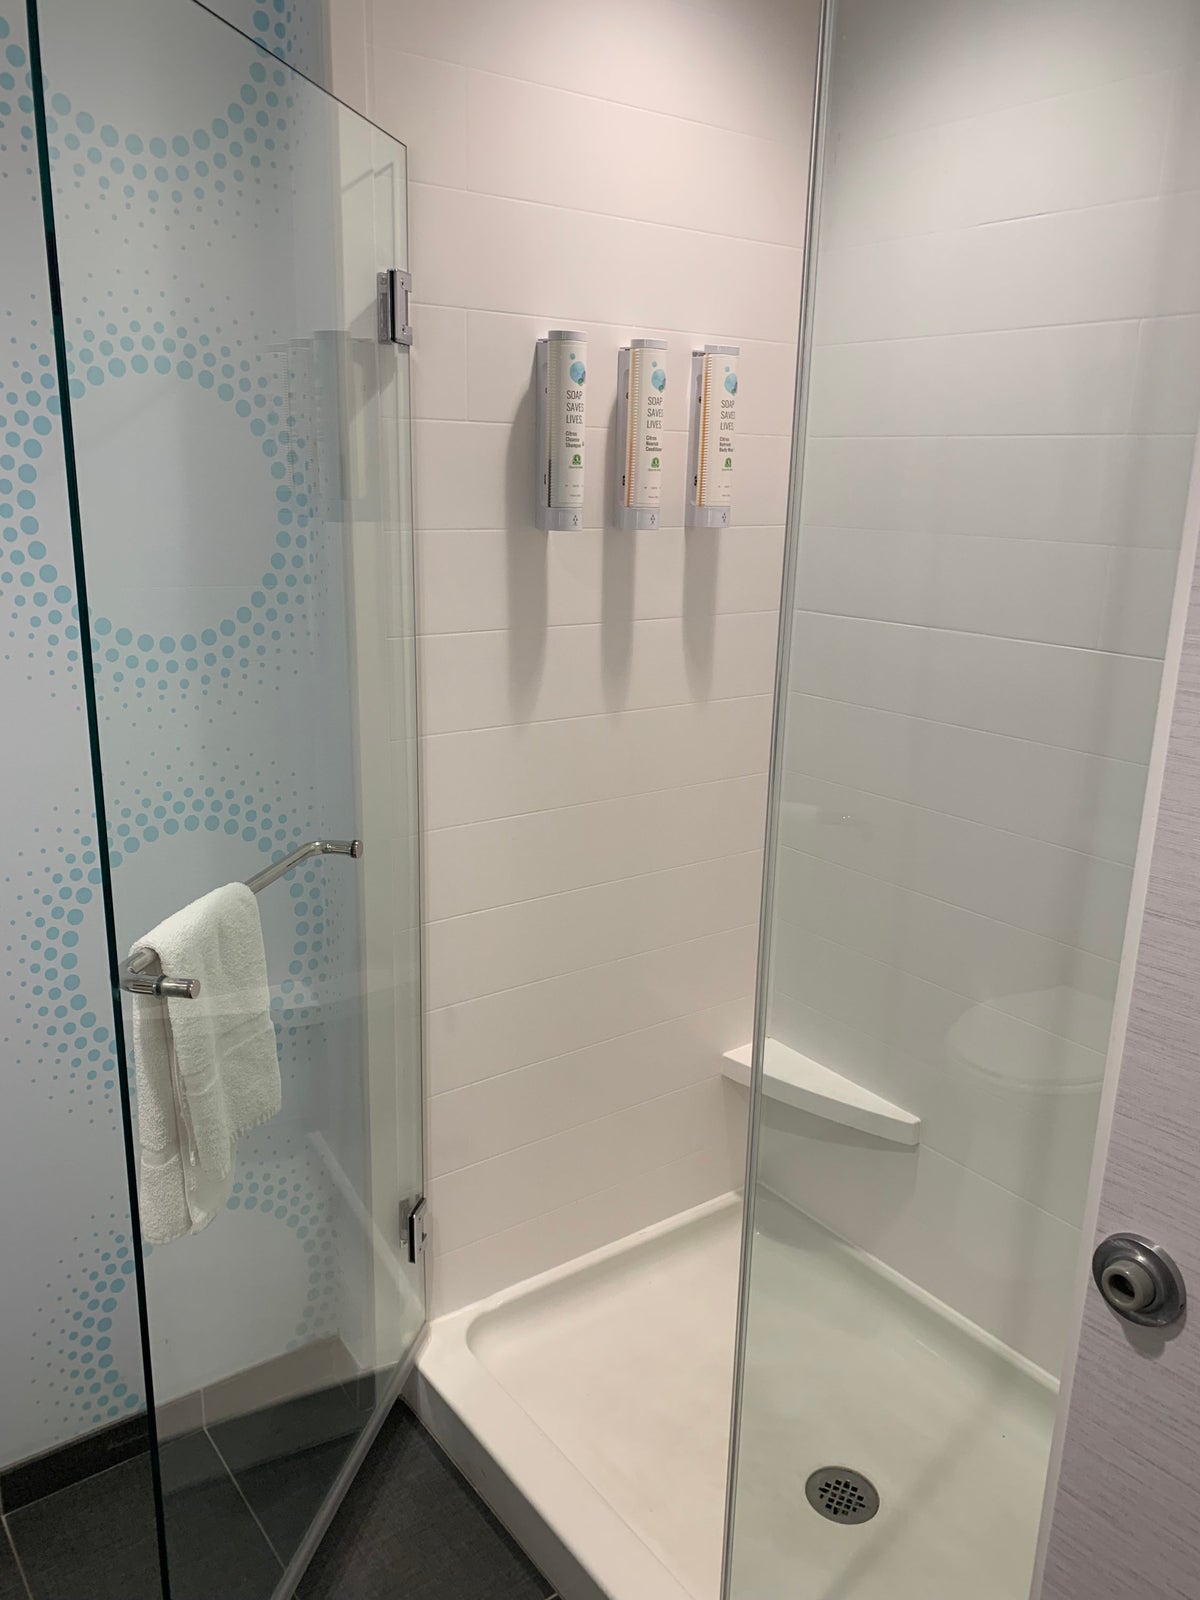 Tru by Hilton Frisco Dallas bathroom shower with amenities